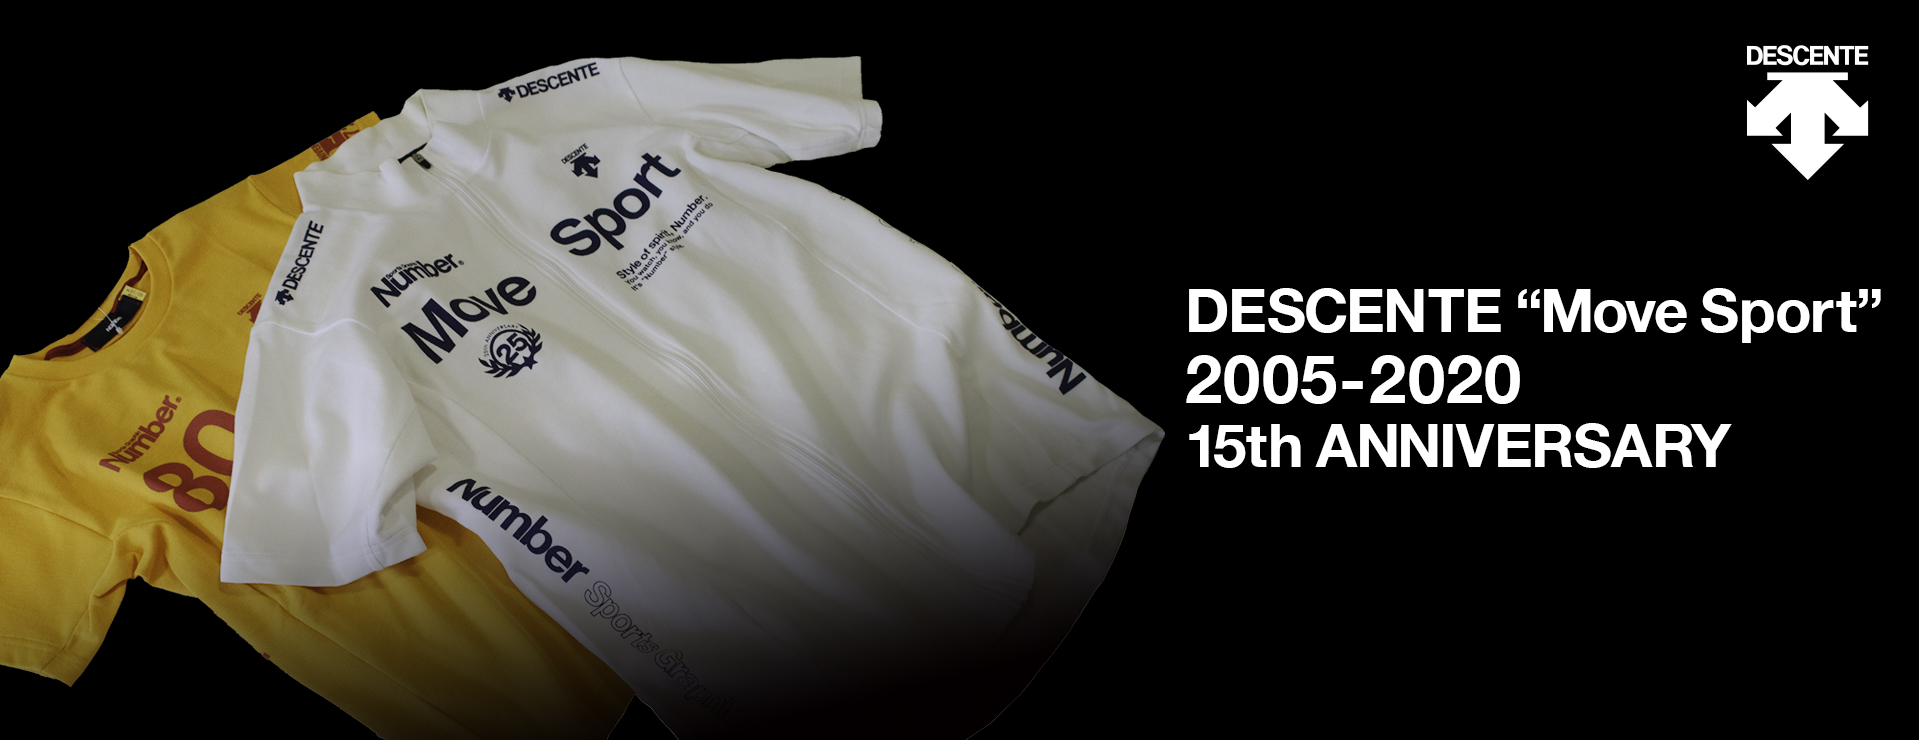 DESCENTE “Move Sport” 2005-2020 15th ANNIVERSARY